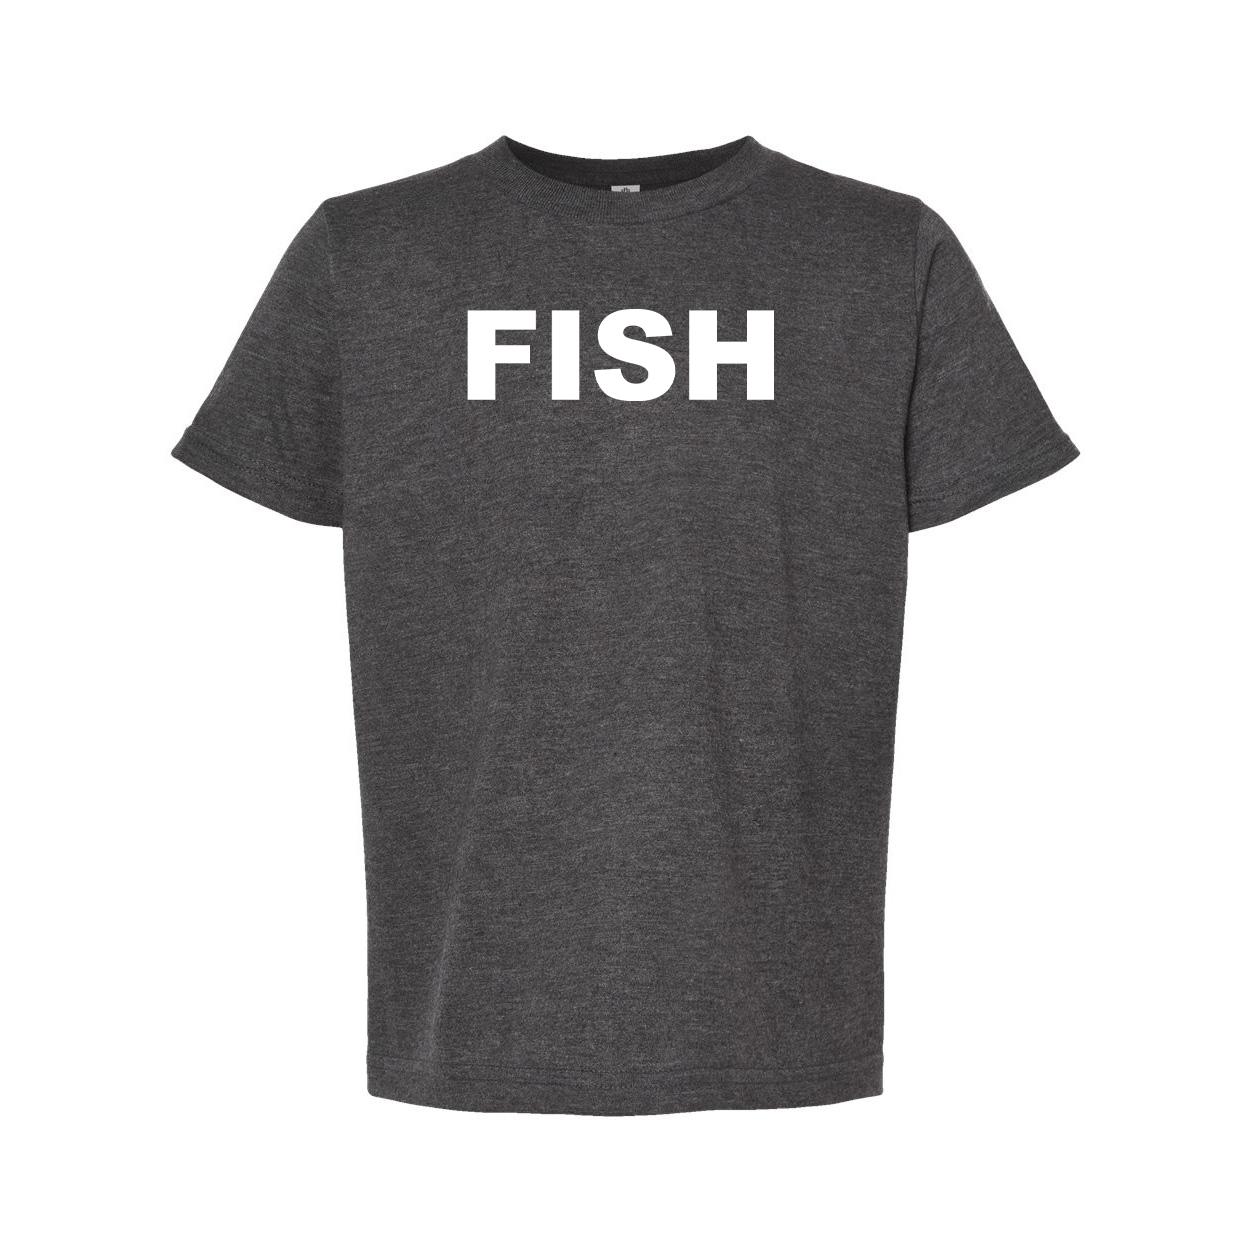 Fish Brand Logo Classic Youth T-Shirt Dark Heather Gray (White Logo)